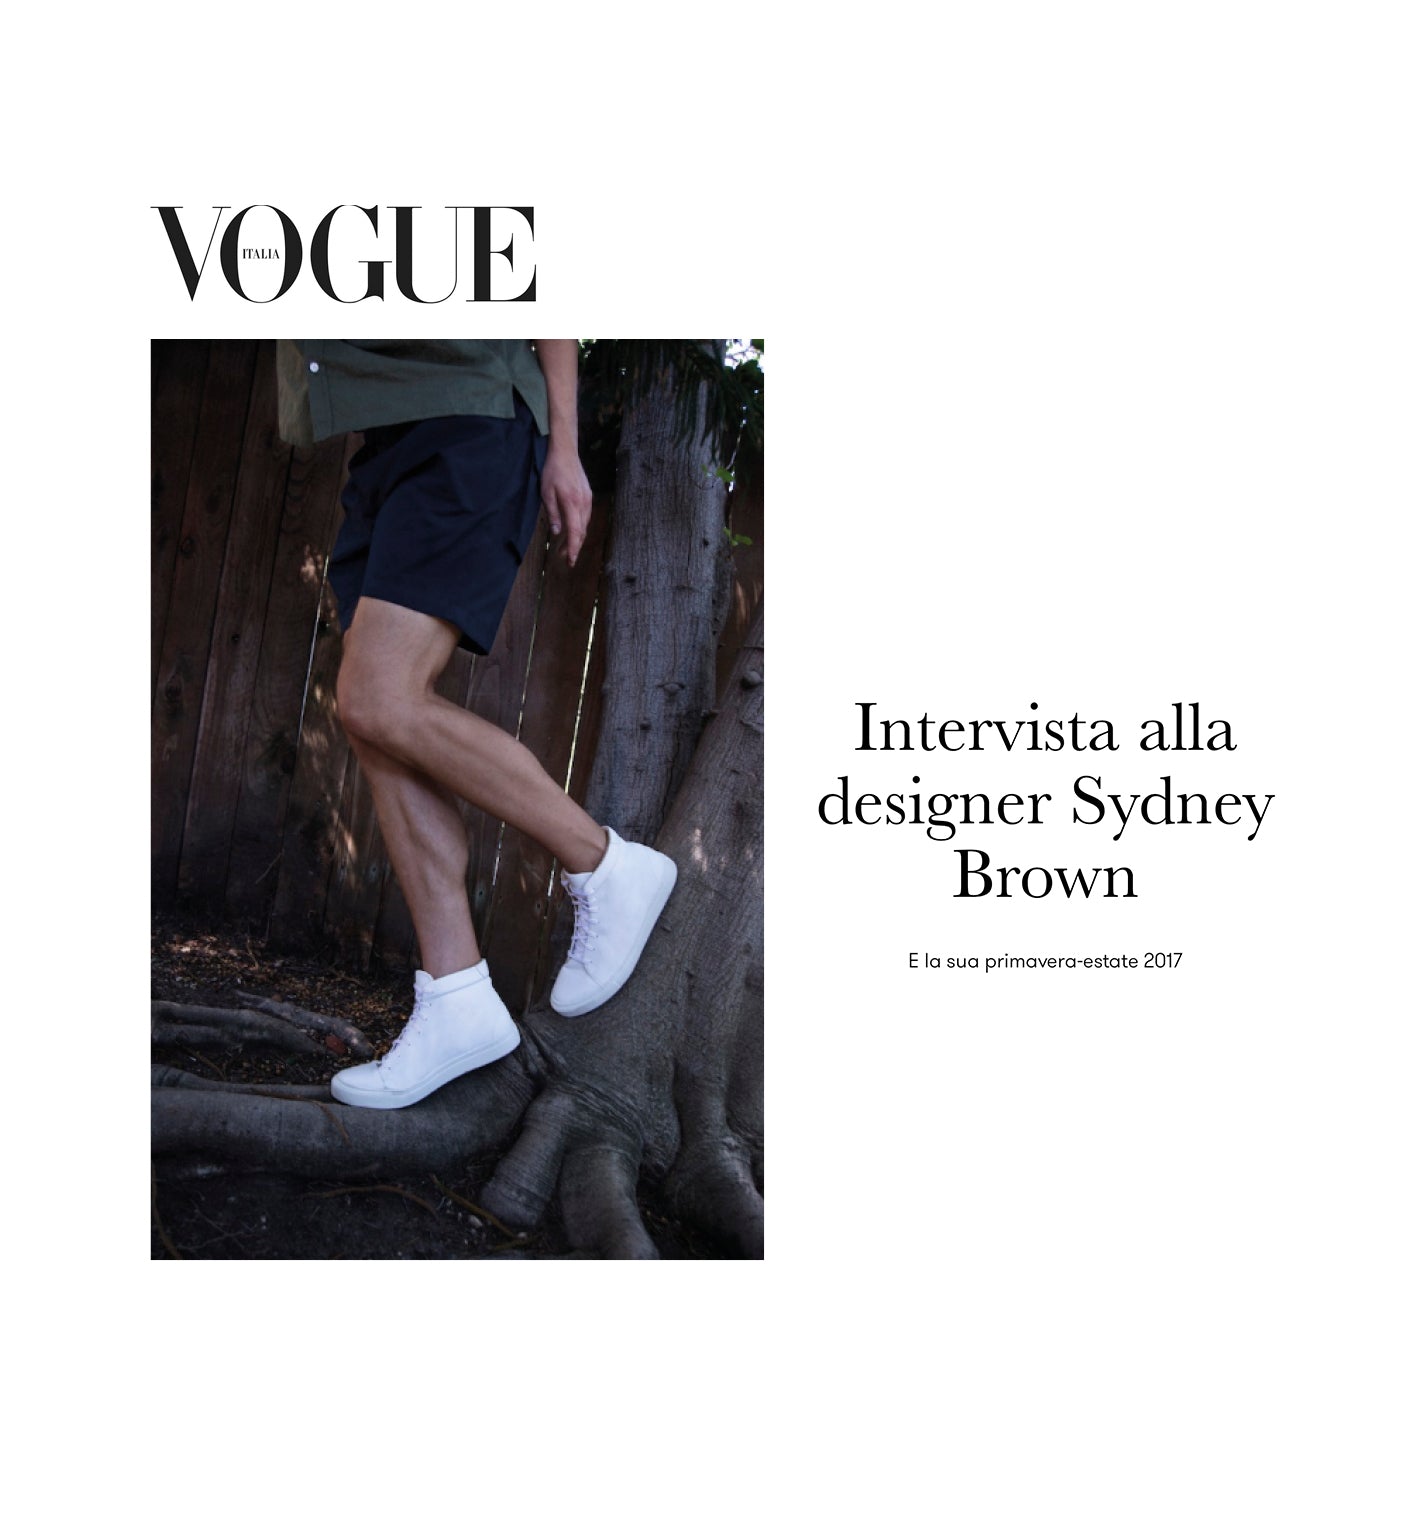 2. Vogue Italia